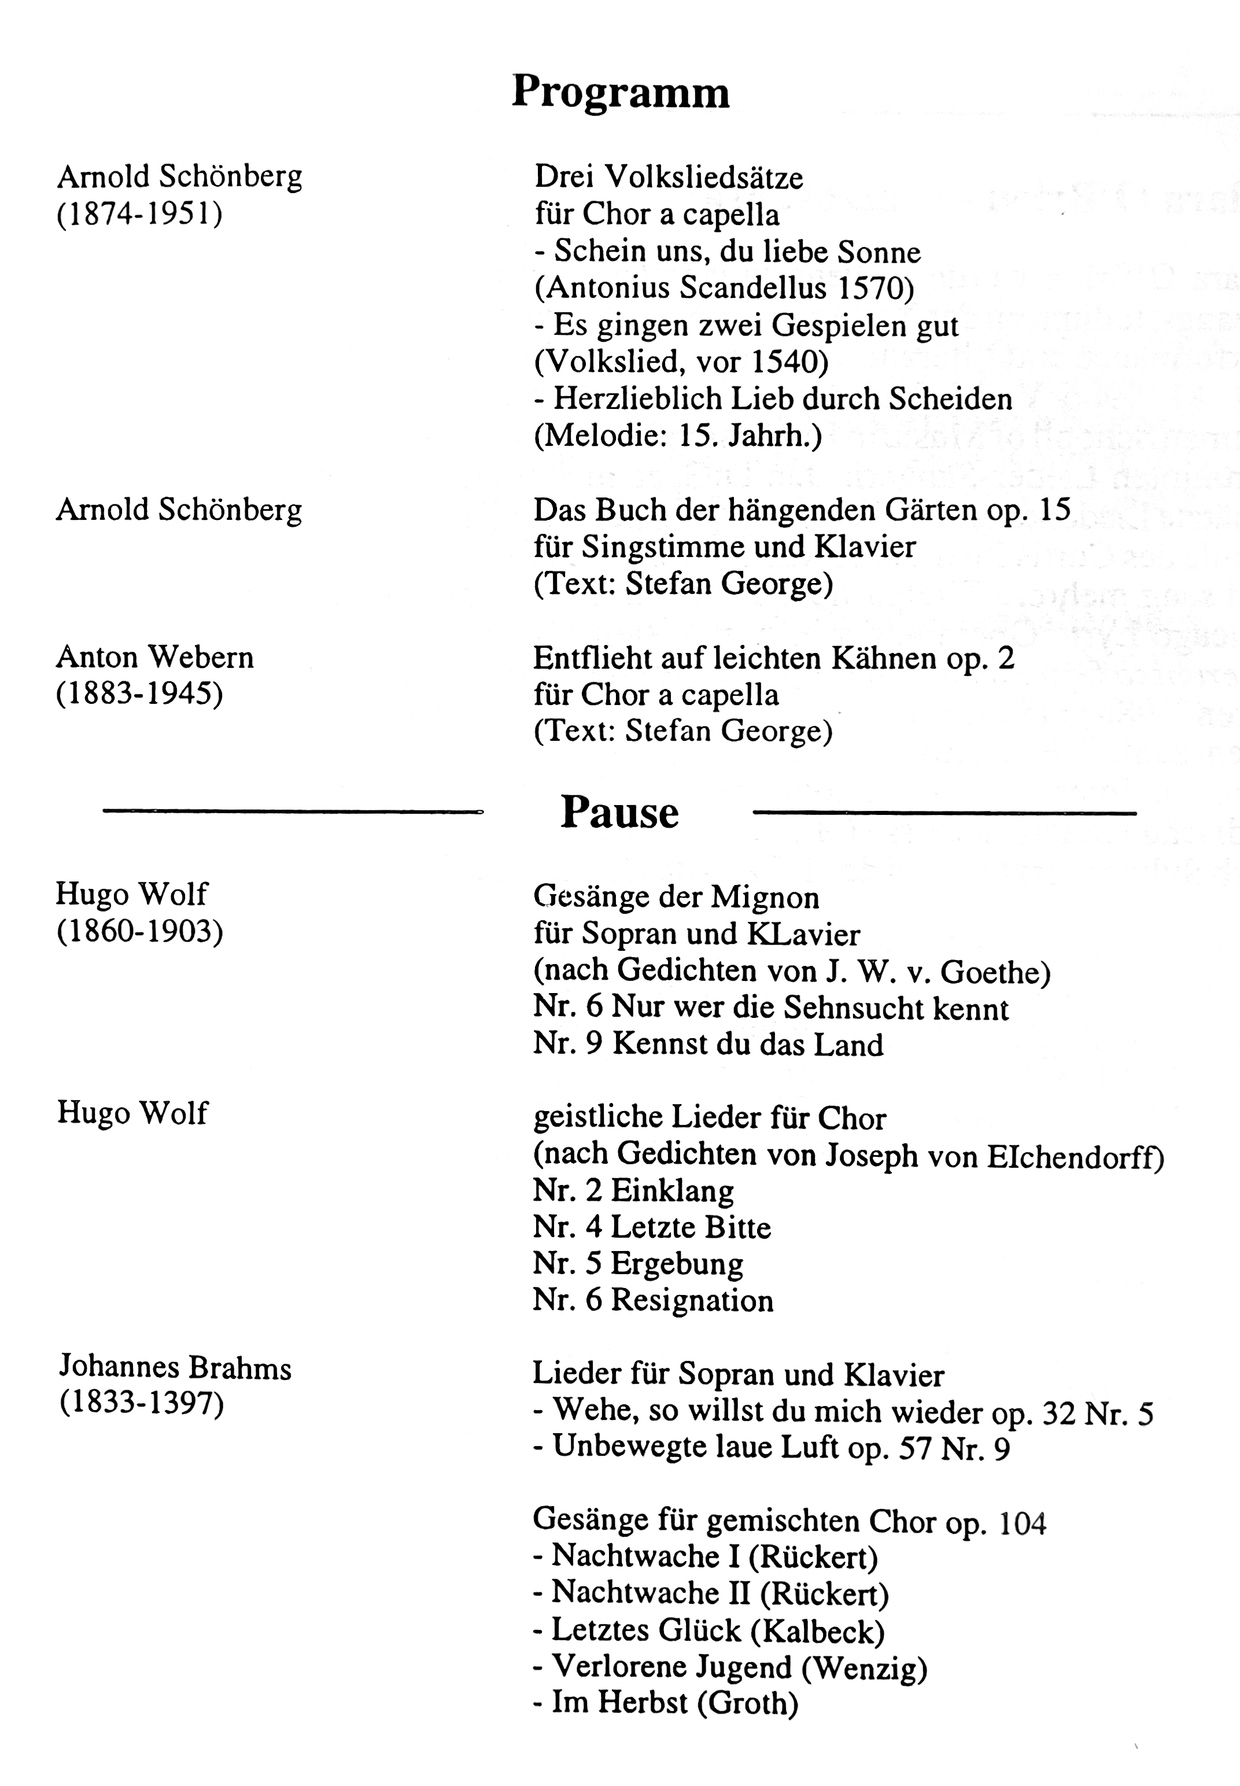 Programm Brahms-Schönberg-Wolf-Webern Juli 1996